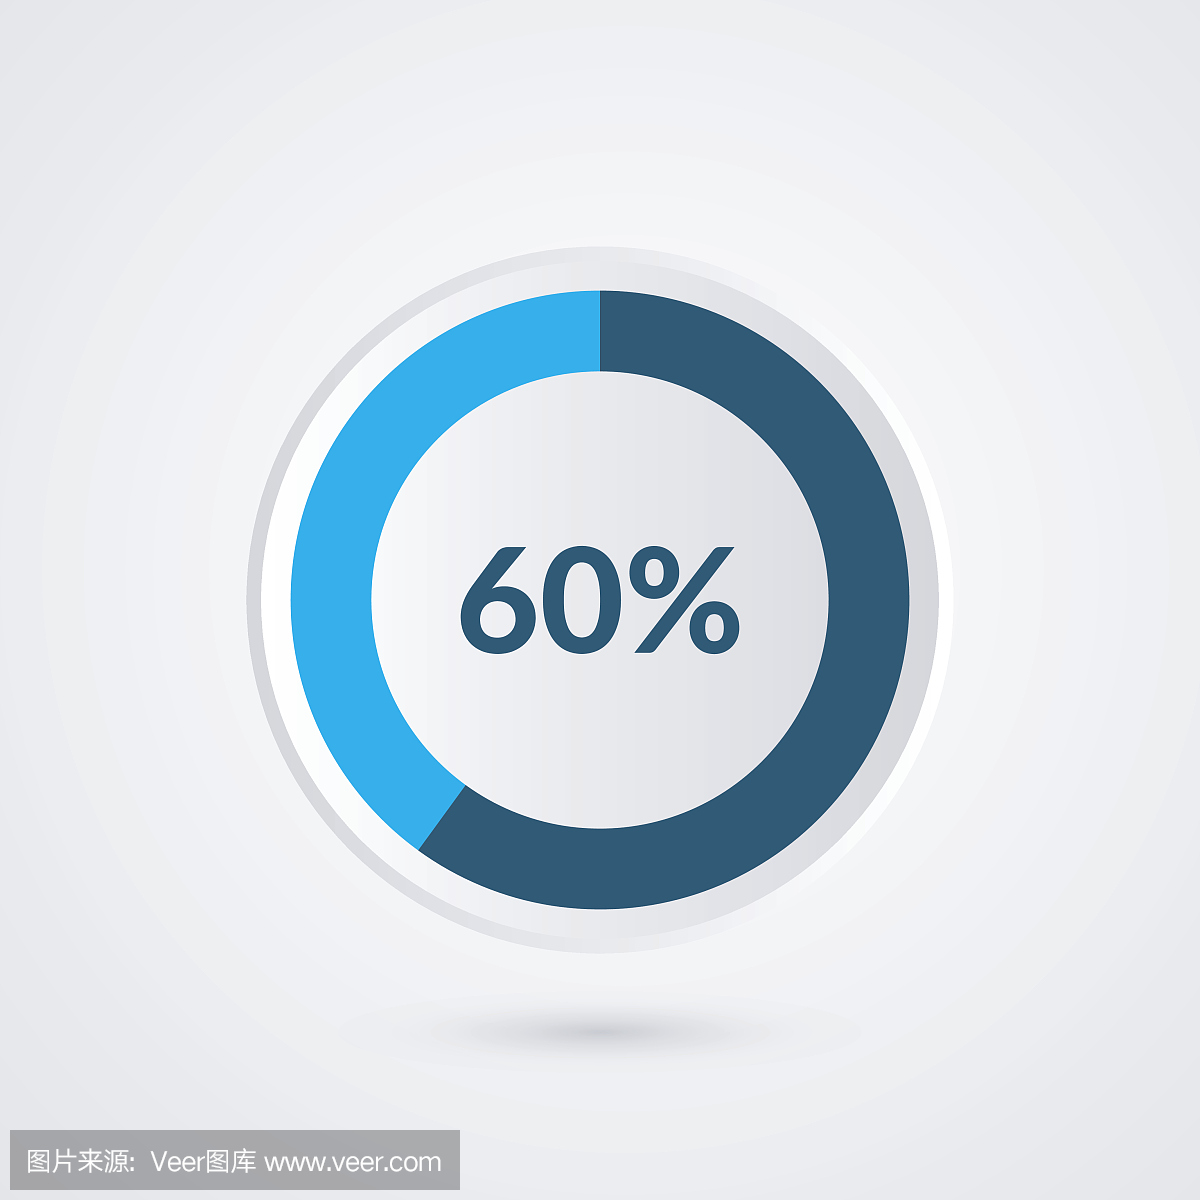 60%的蓝灰色和白色的饼图。百分比矢量图表。